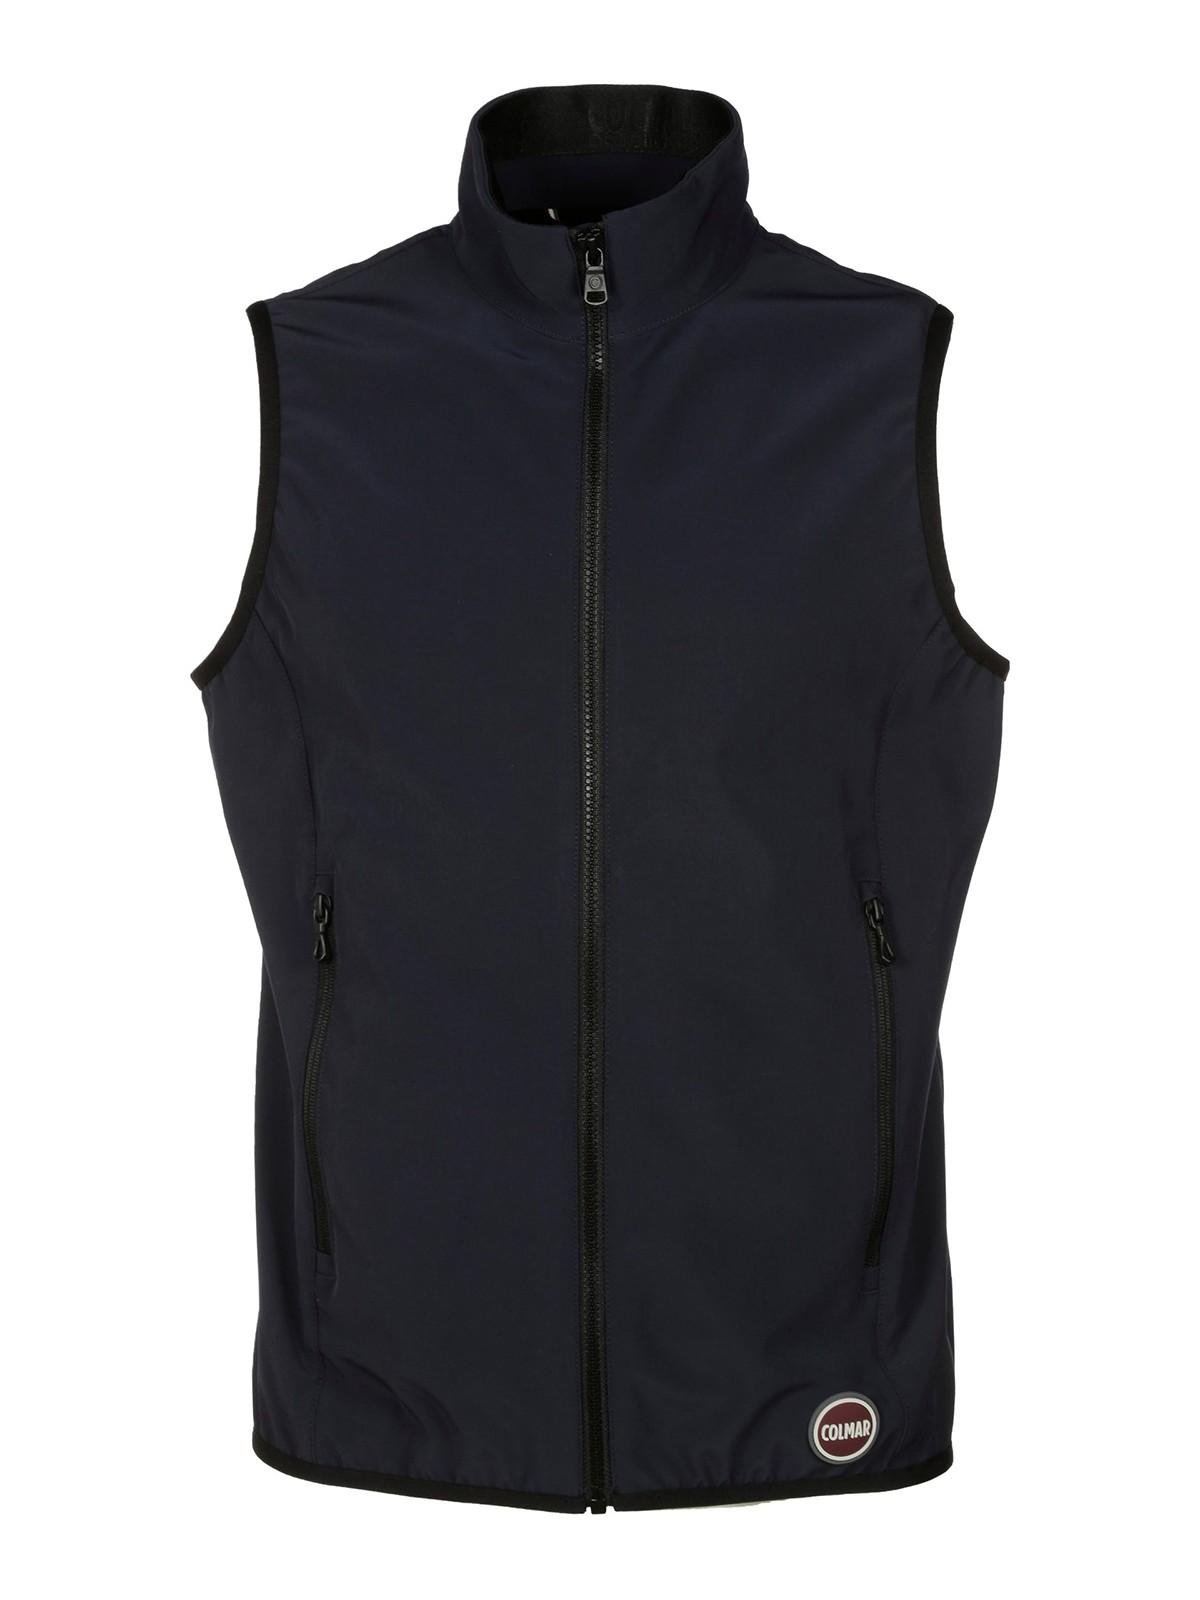 Waistcoats & gilets Colmar Originals - Tech fabric vest - 18096WV68